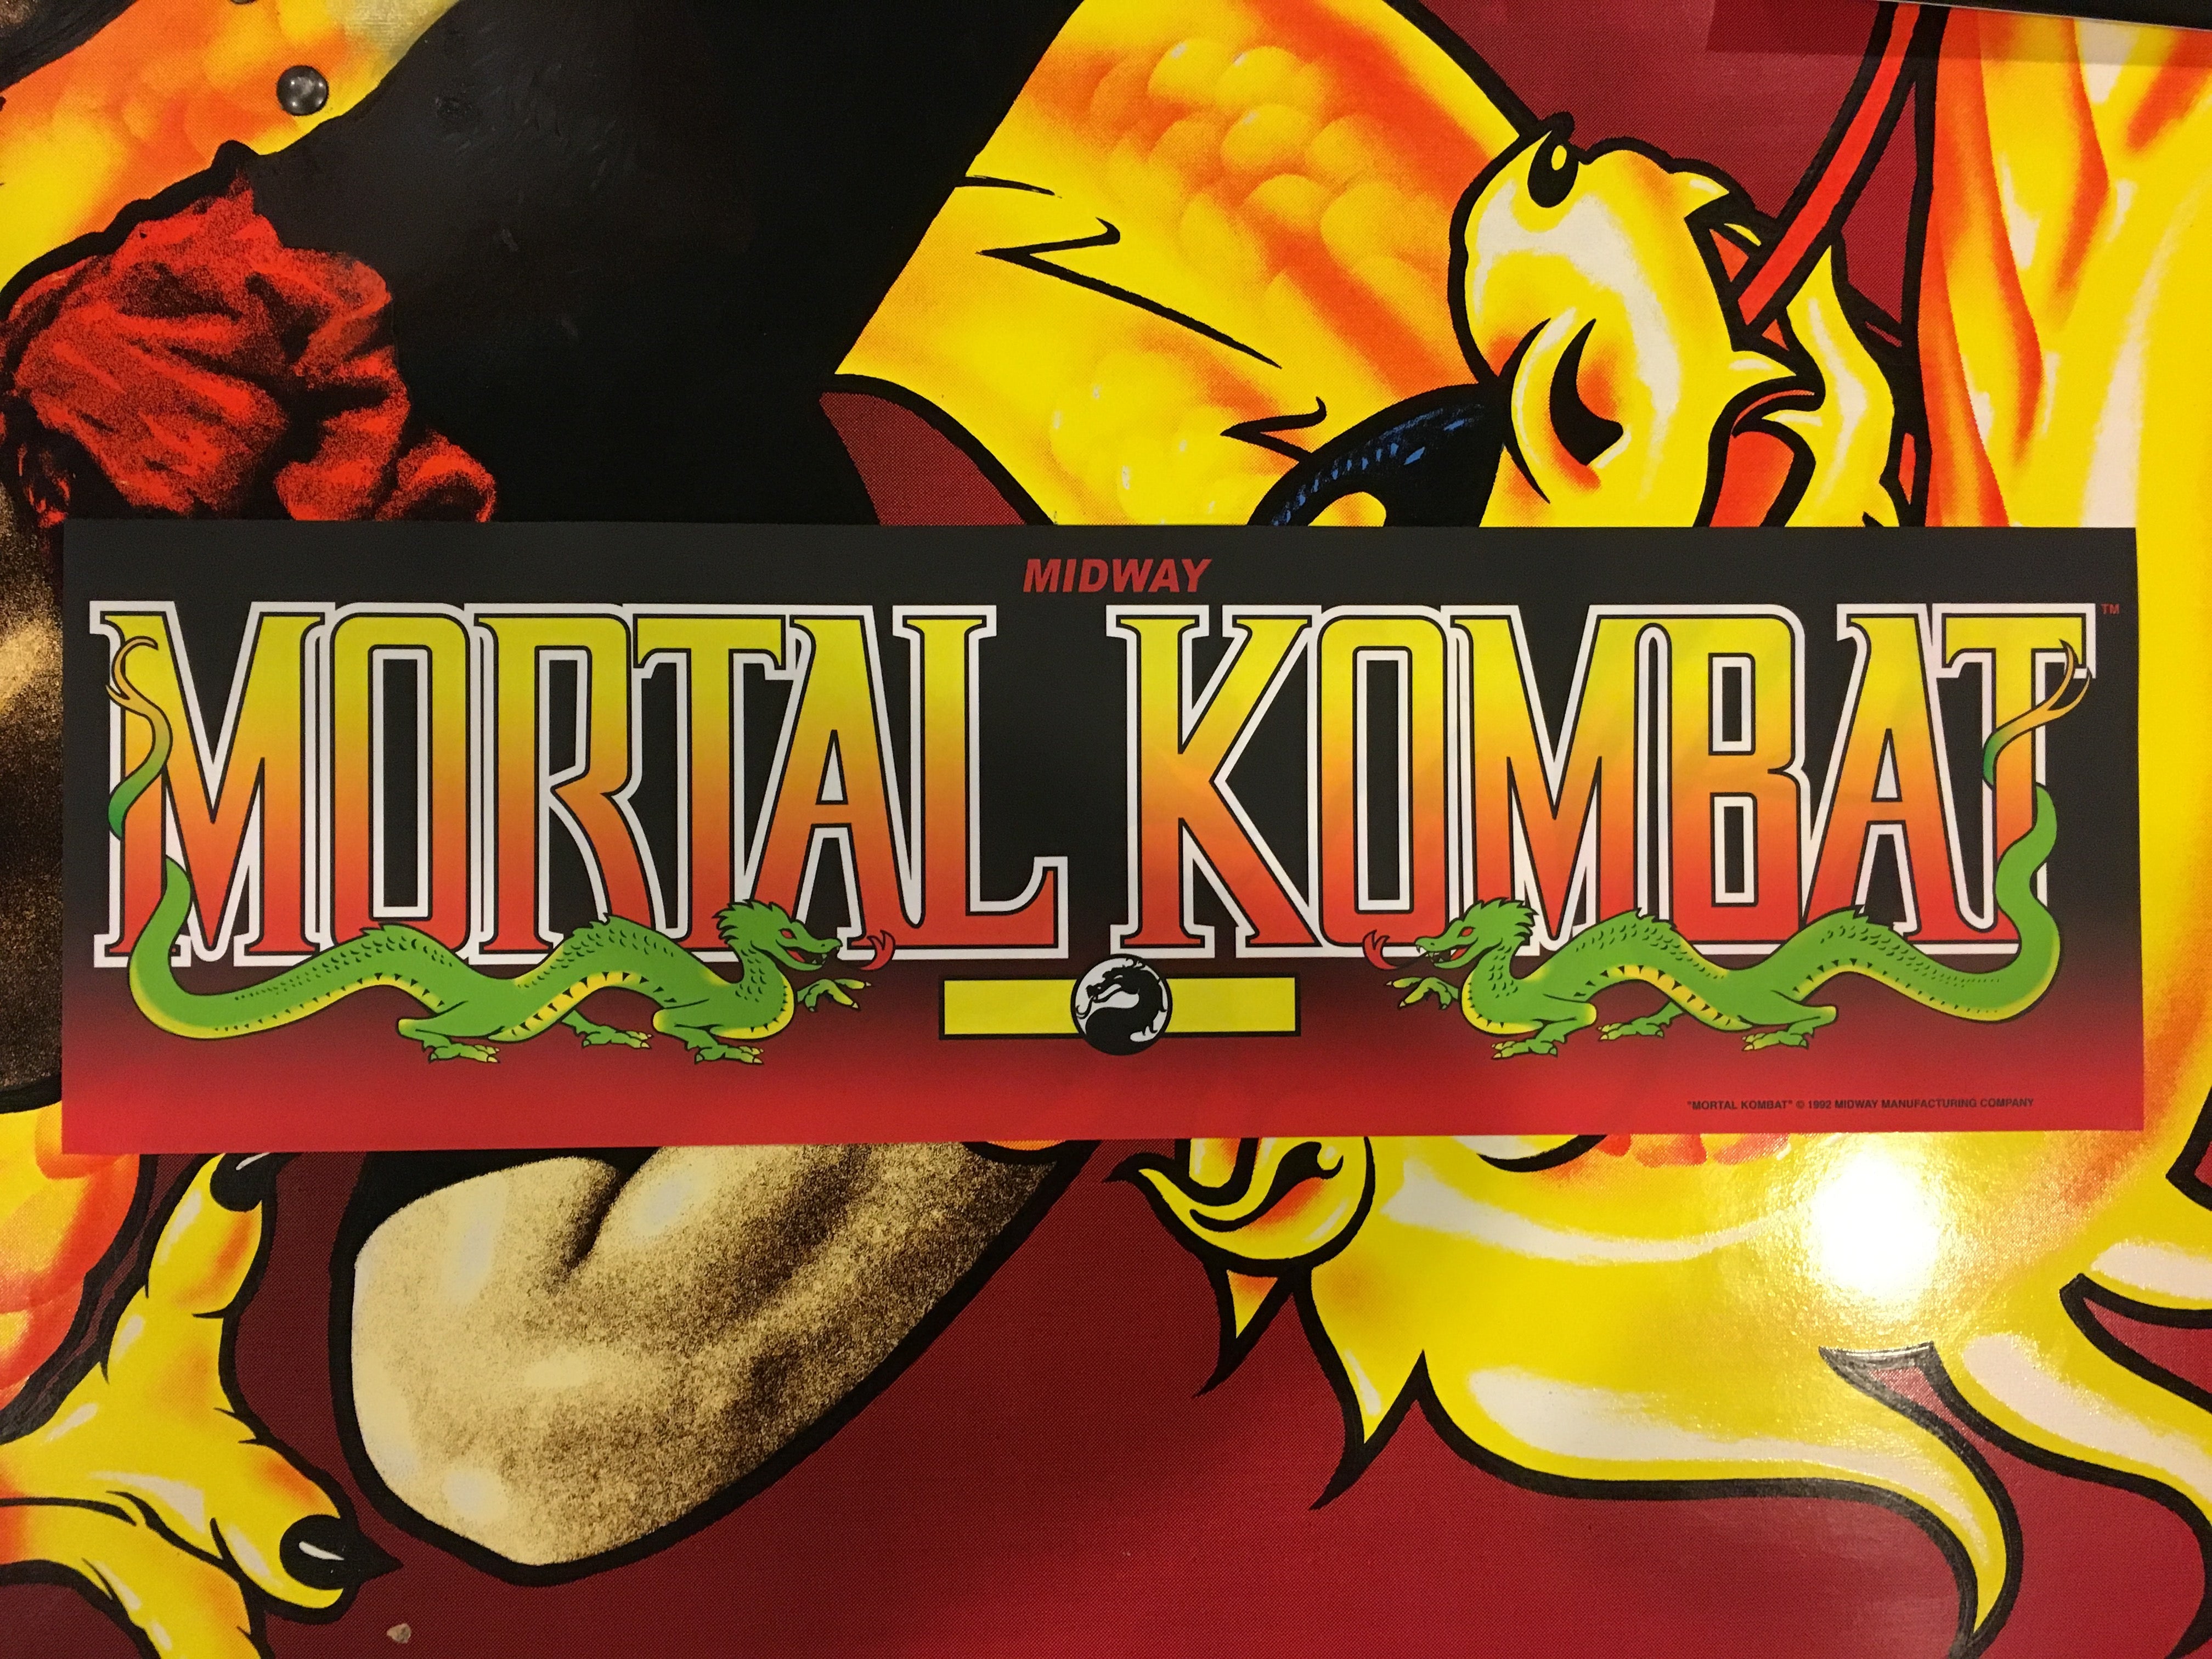 Carpa de Mortal Kombat